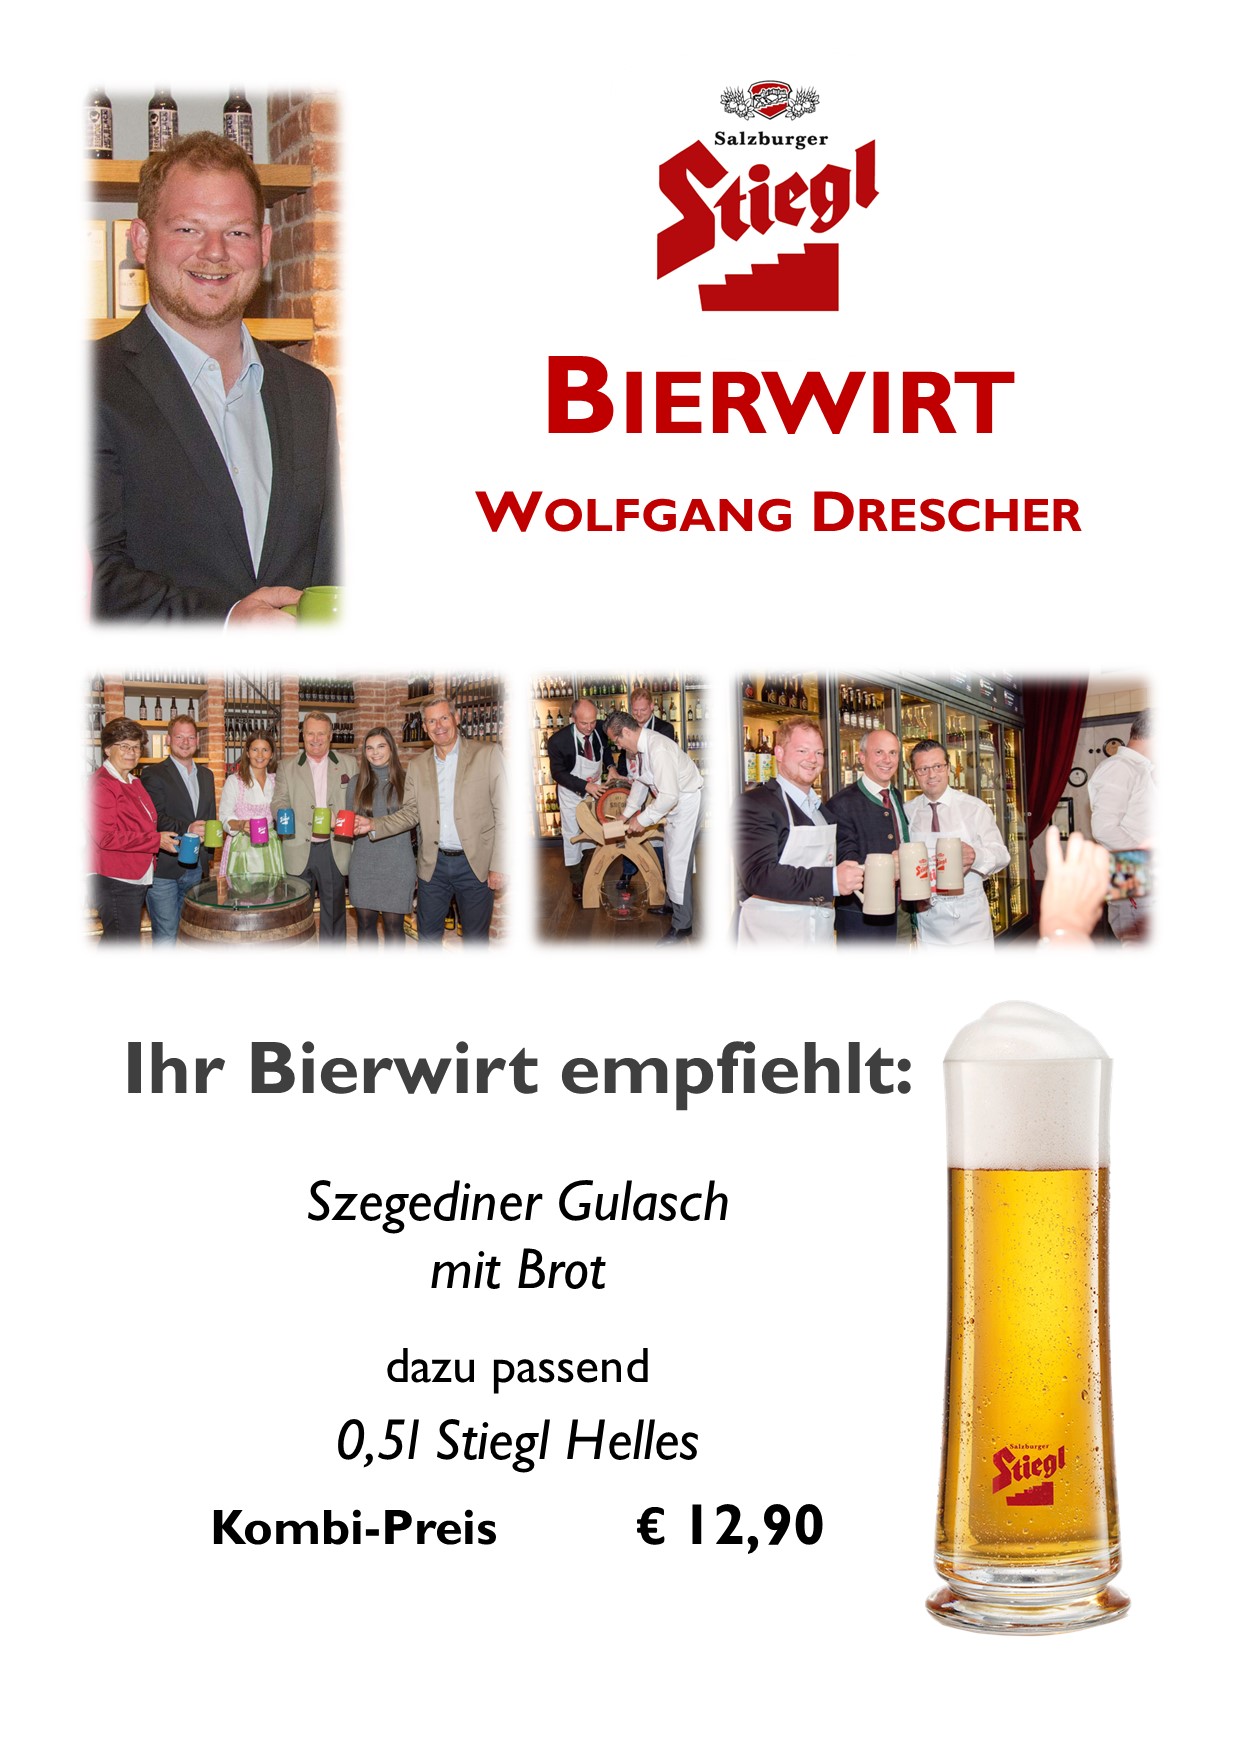 Bierwirt Wolfgang Drescher Restaurant Alte Schmiede Rust am Neusiedler See Stiegl Bier Szegediner Gulasch